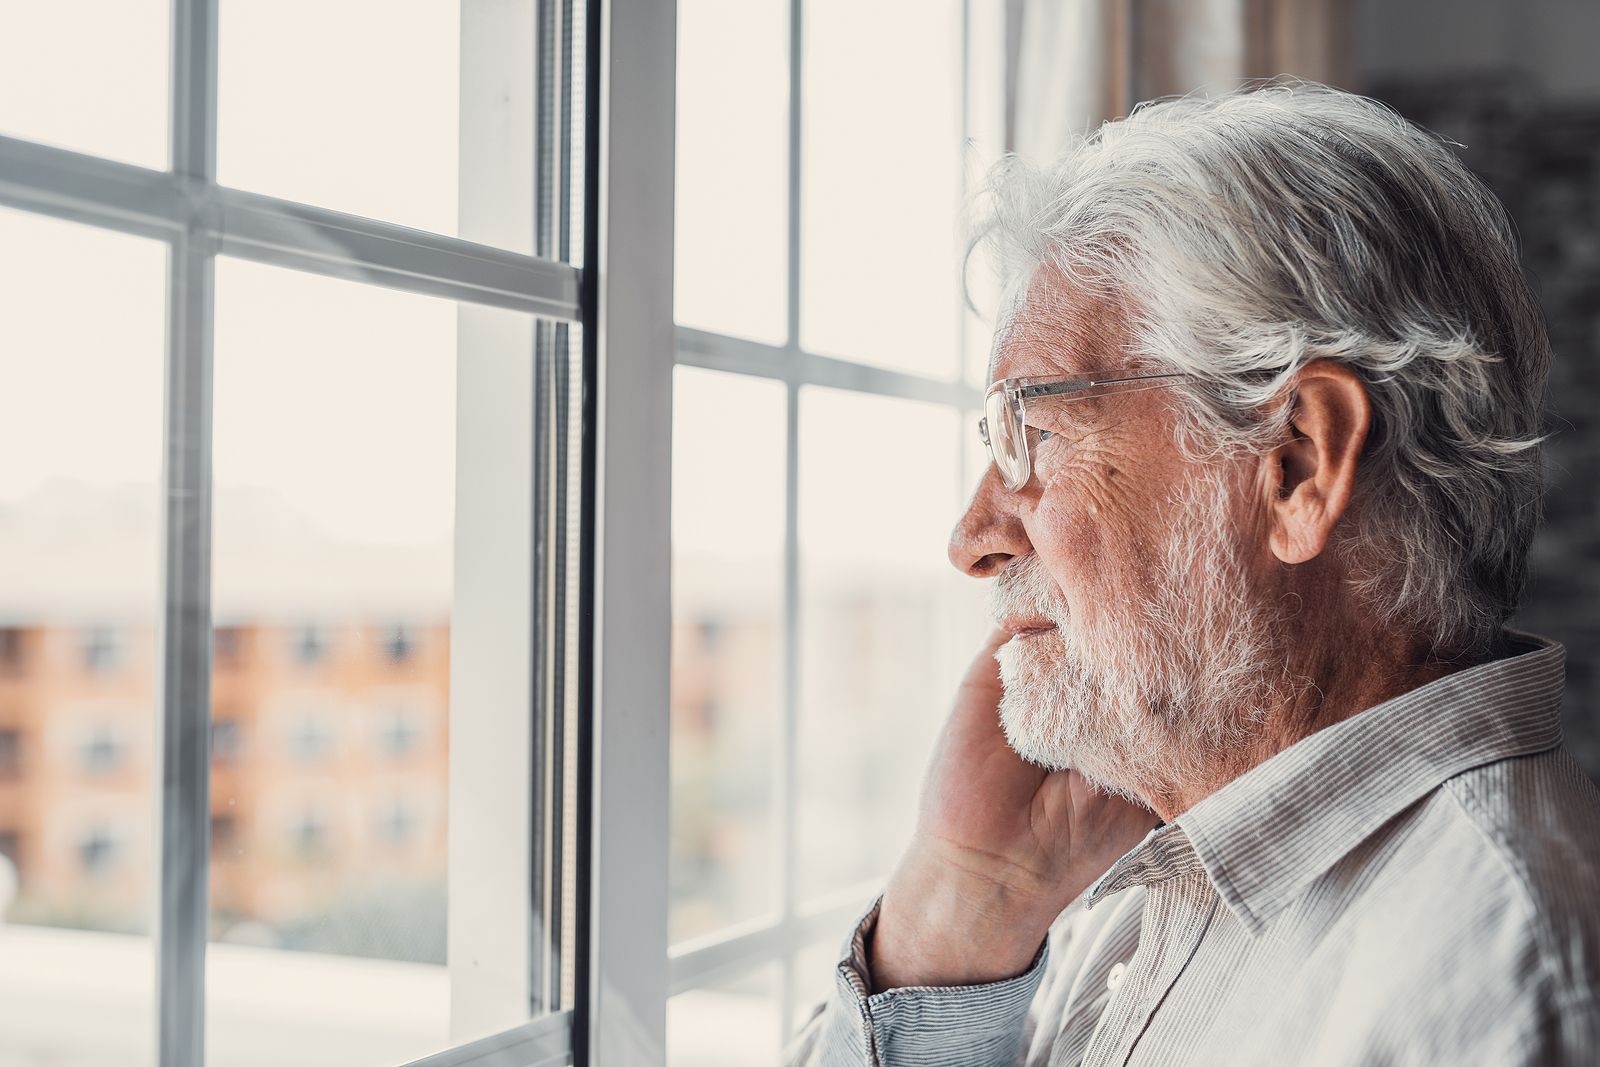 La soledad no deseada aumenta entre los mayores: "Tenemos que garantizar su participación social"